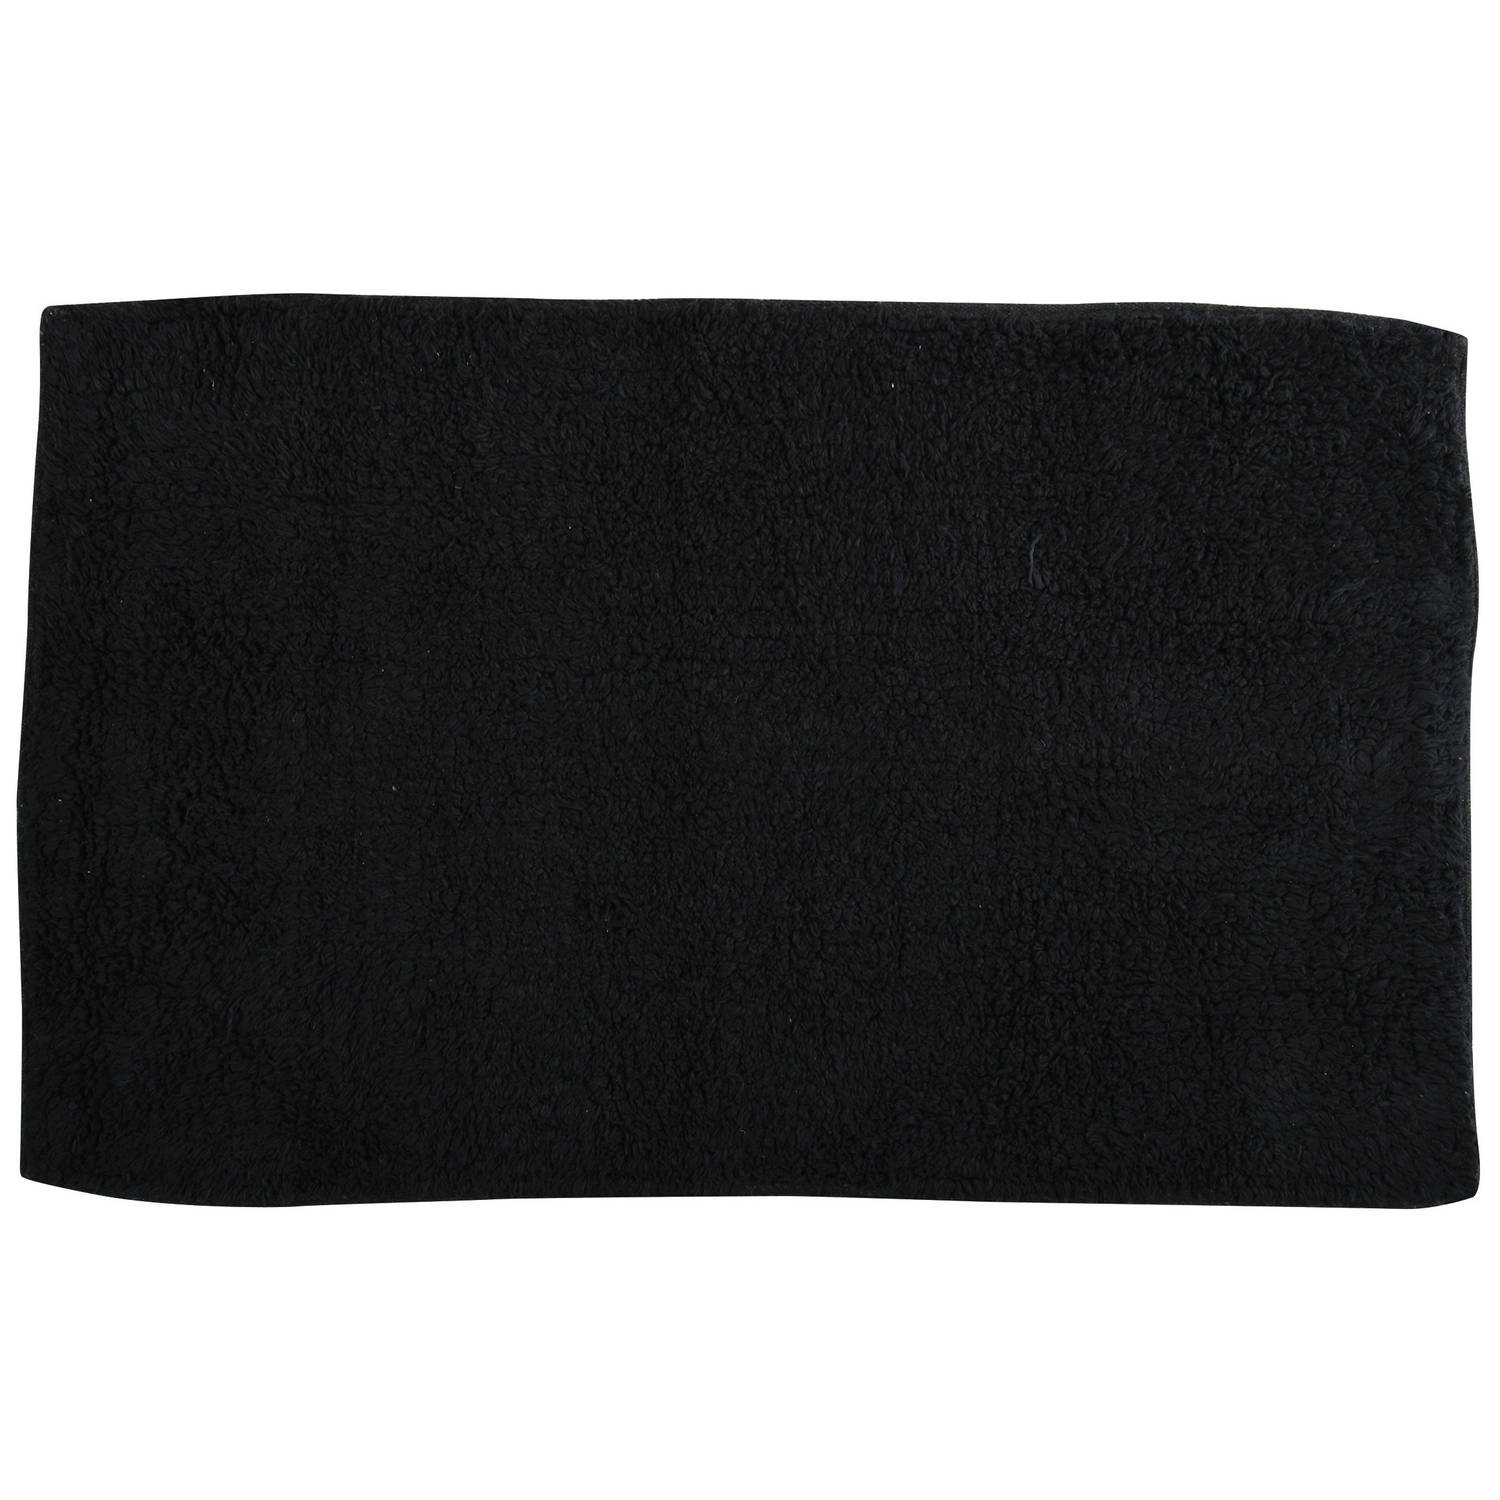 Msv Badkamerkleedje-badmat Voor Op De Vloer Zwart 45 X 70 Cm